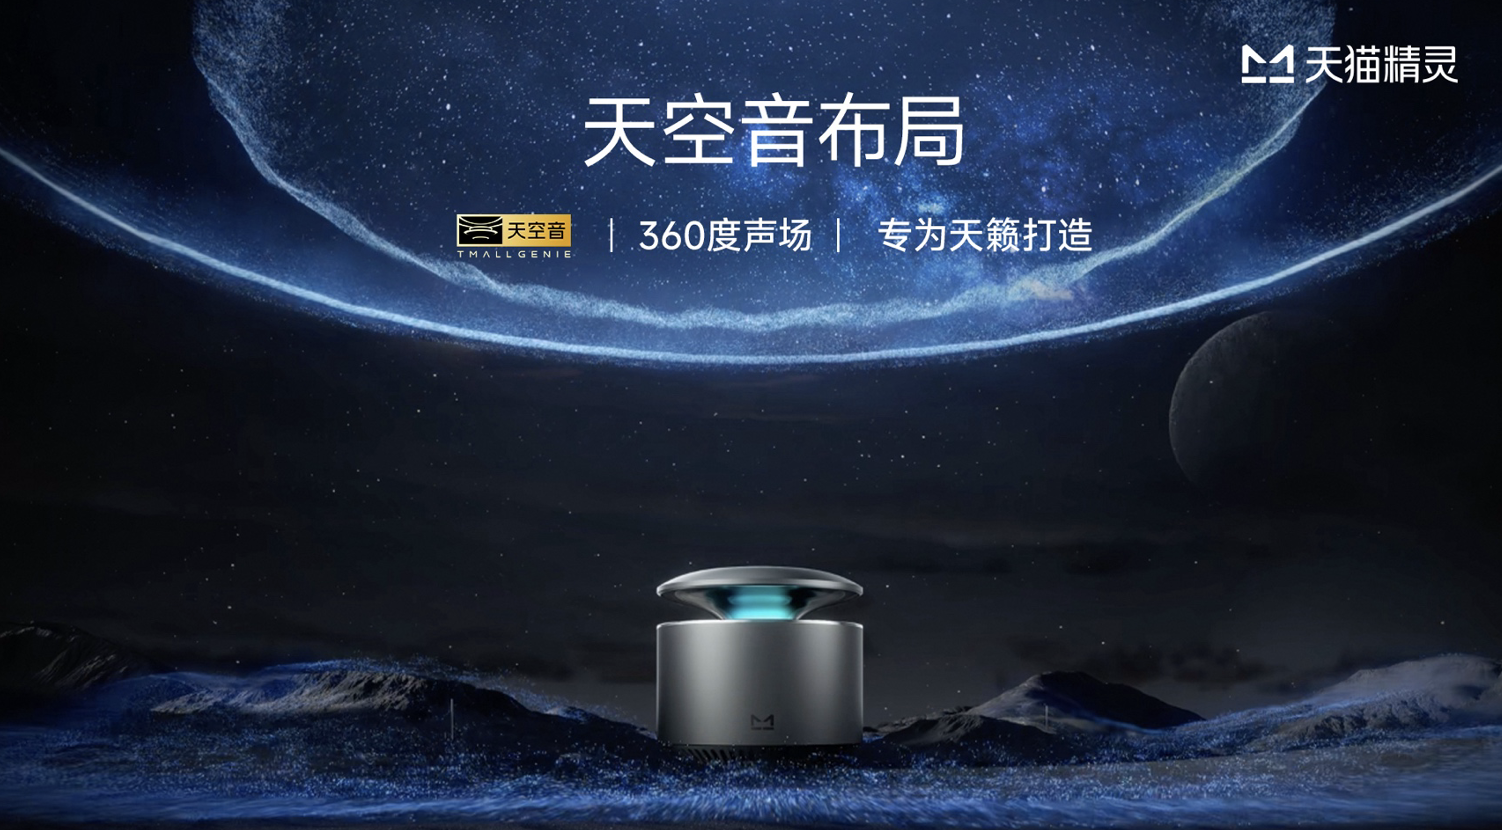 天猫精灵携全球品牌代言人周深发布 X6智能音箱